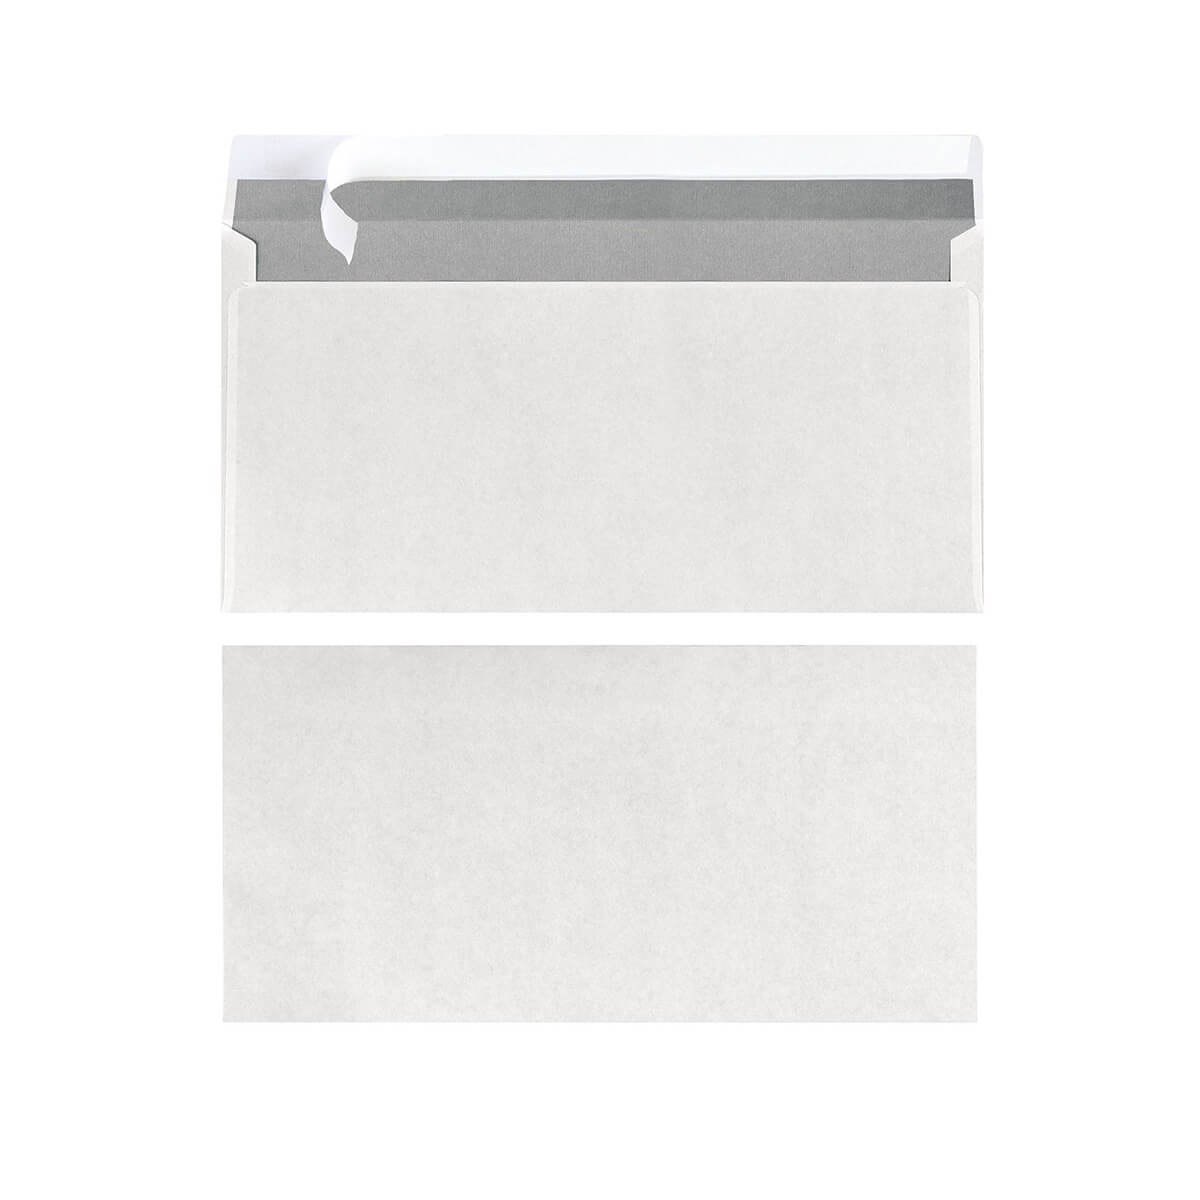 25x Herlitz Envelope DIN lang, white, no window